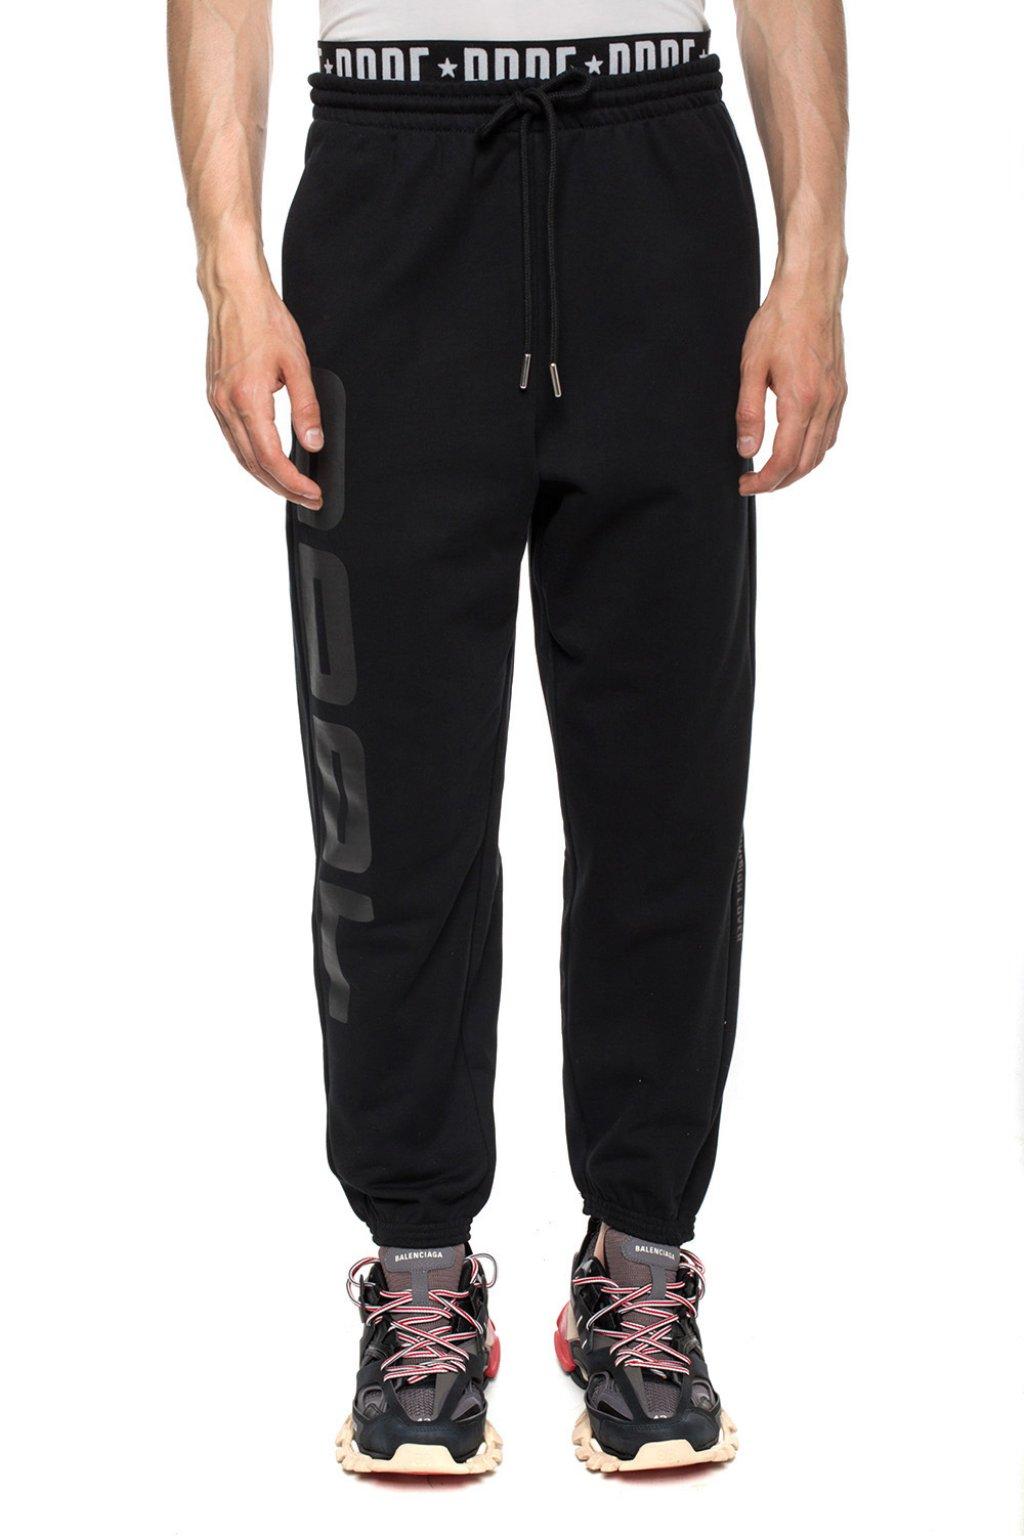 DIESEL Cotton Printed Sweatpants in Black for Men - Lyst